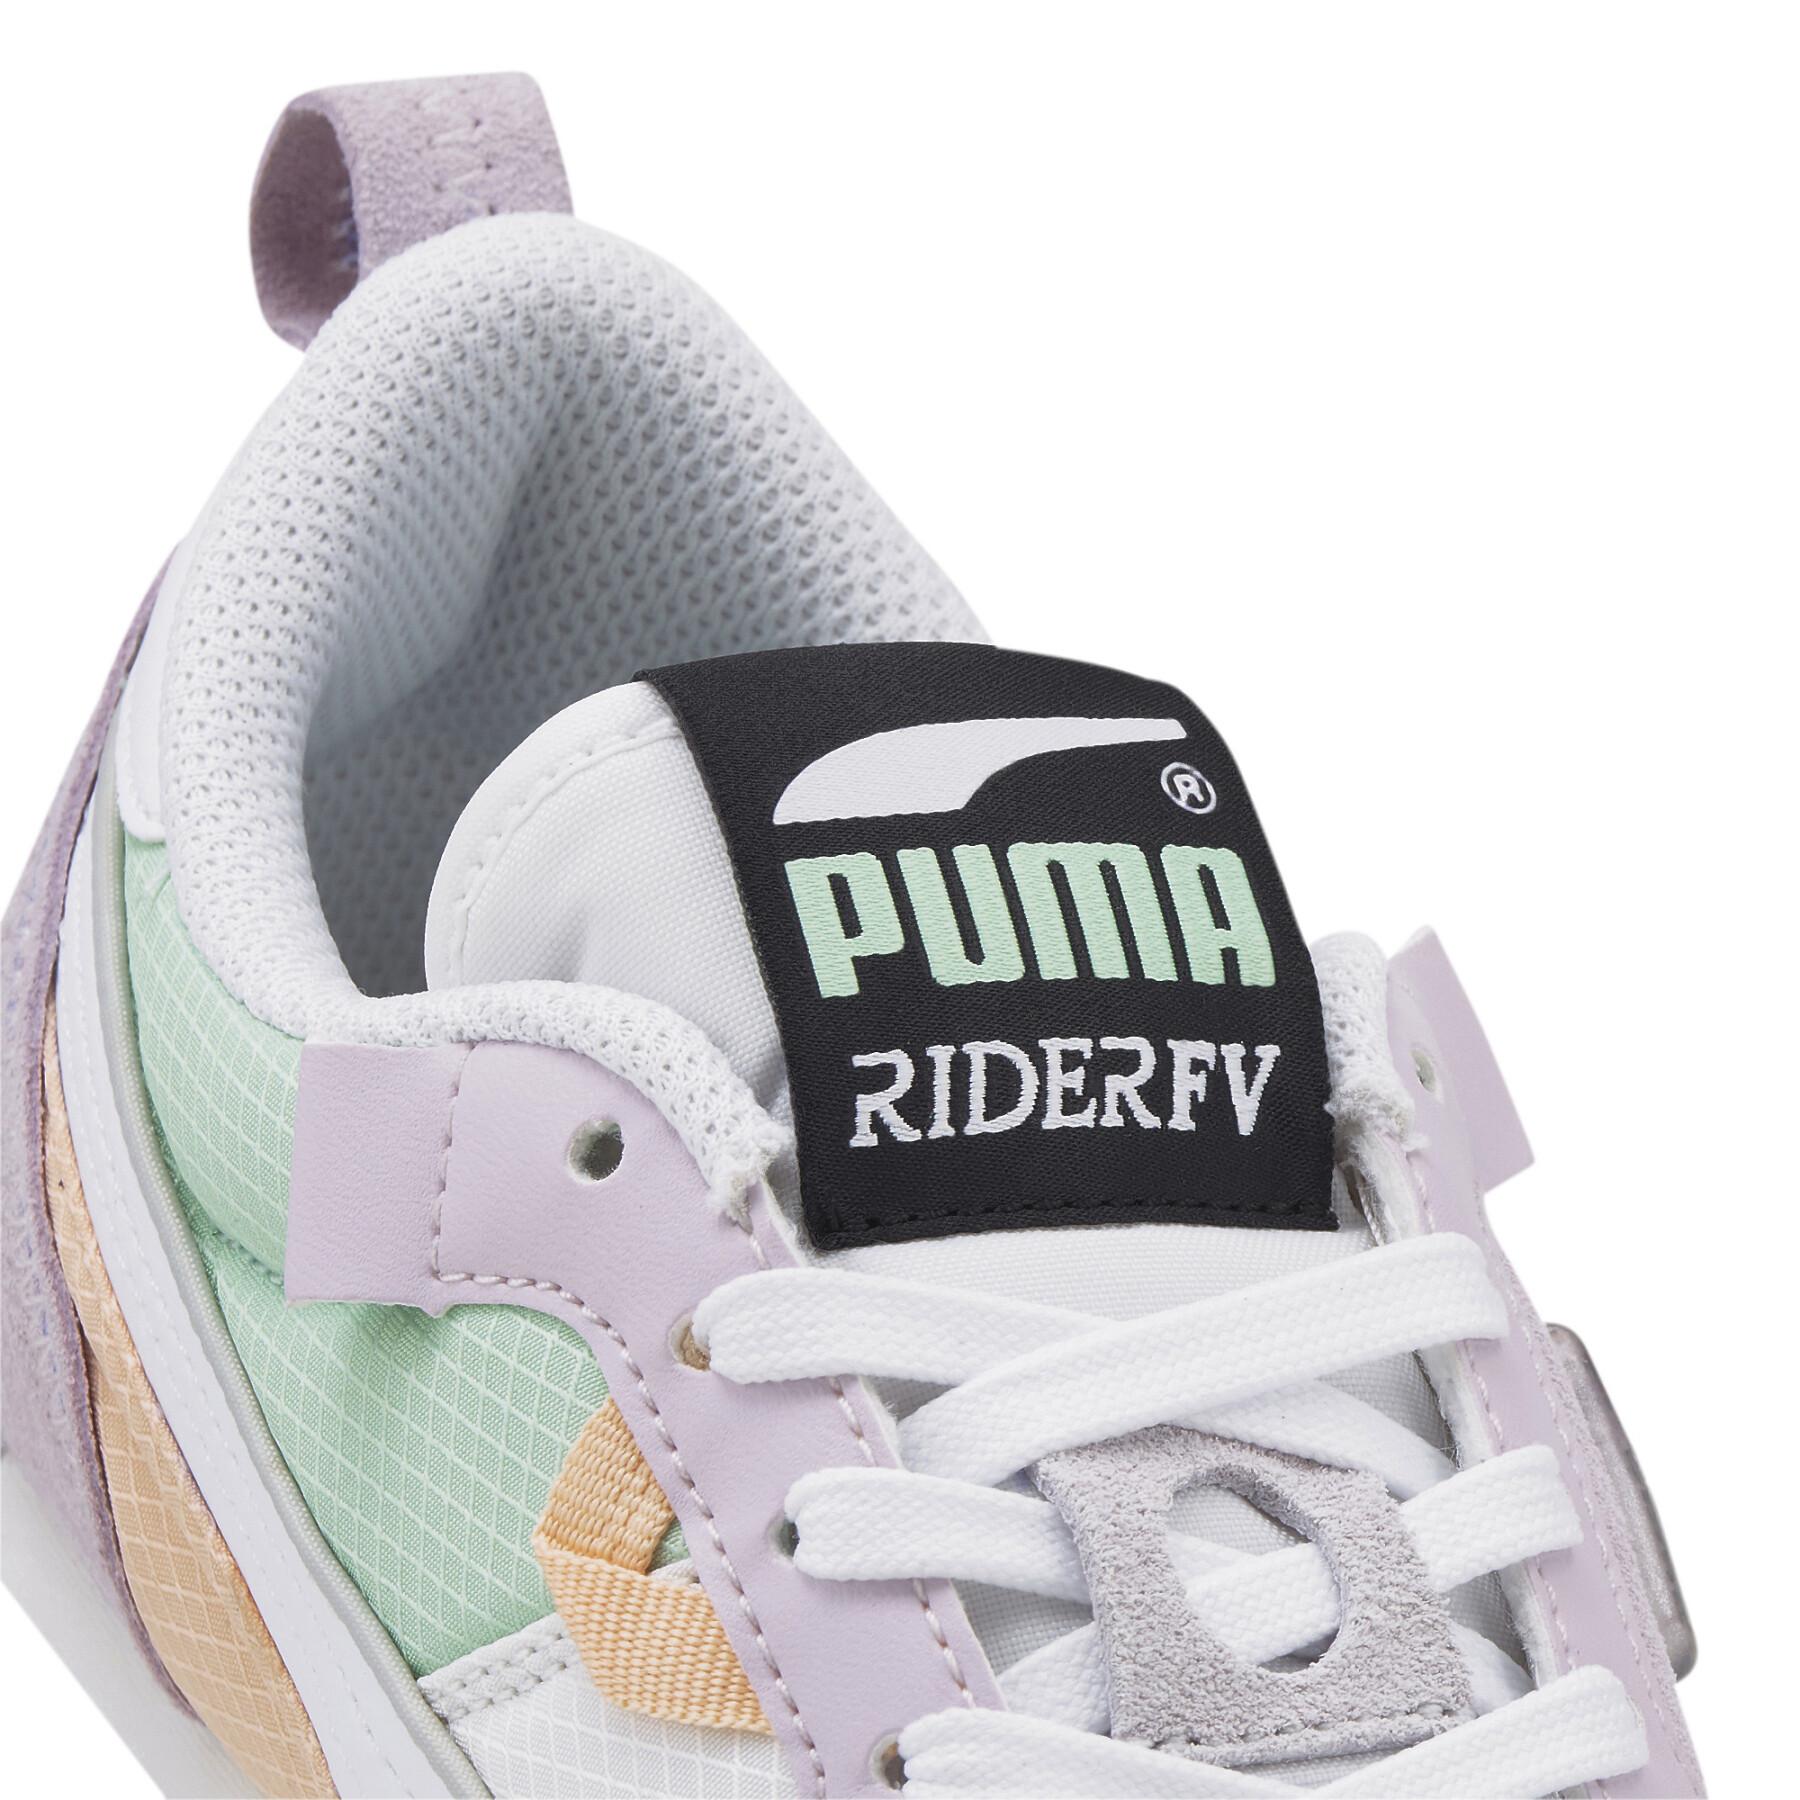 Trenerzy damscy Puma Rider Fv Futurev